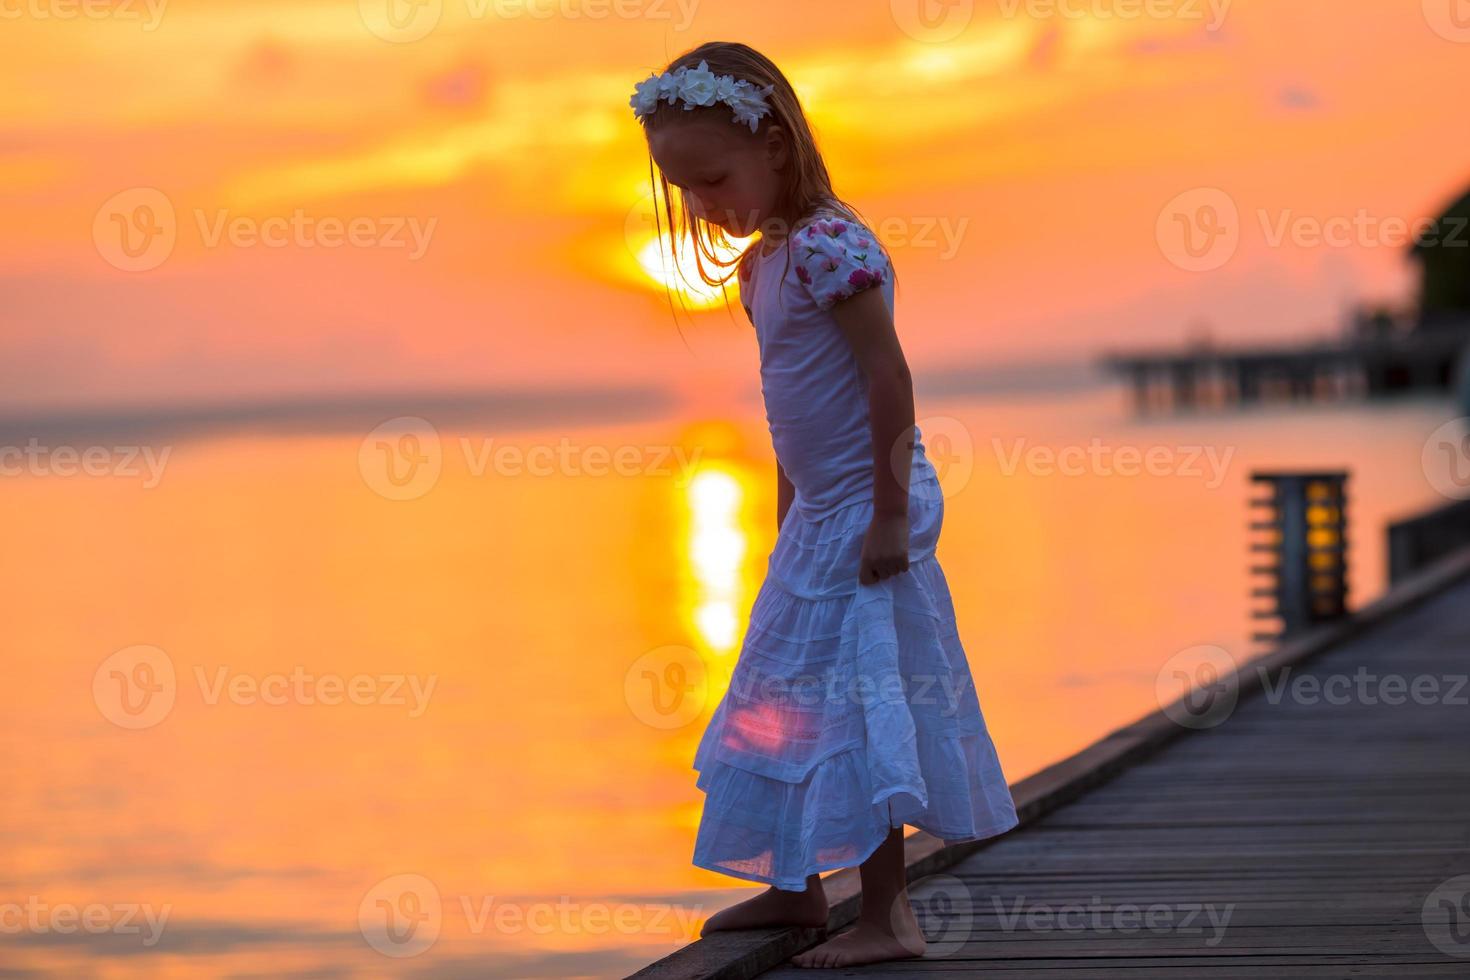 sagoma di adorabile bambina sul molo di legno al tramonto foto